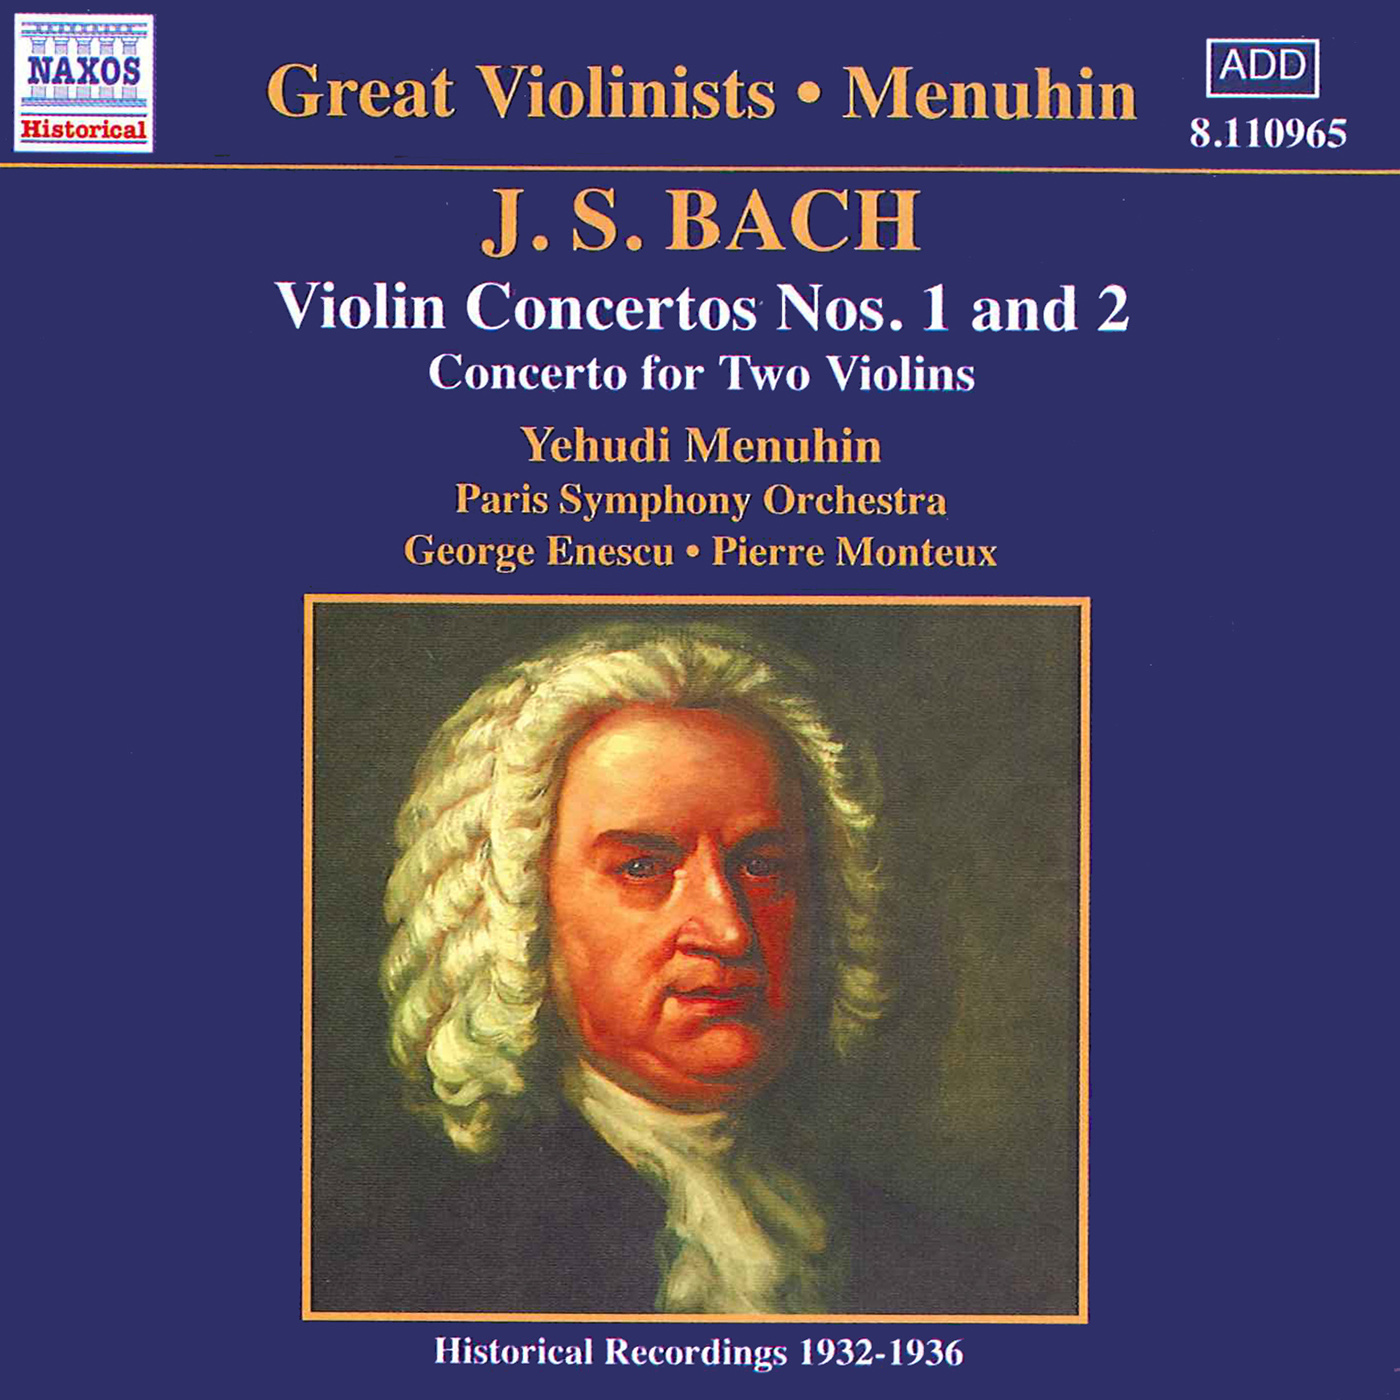 BACH, J.S.: Violin Concertos Nos. 1 and 2  (Menuhin) (1932-1936)